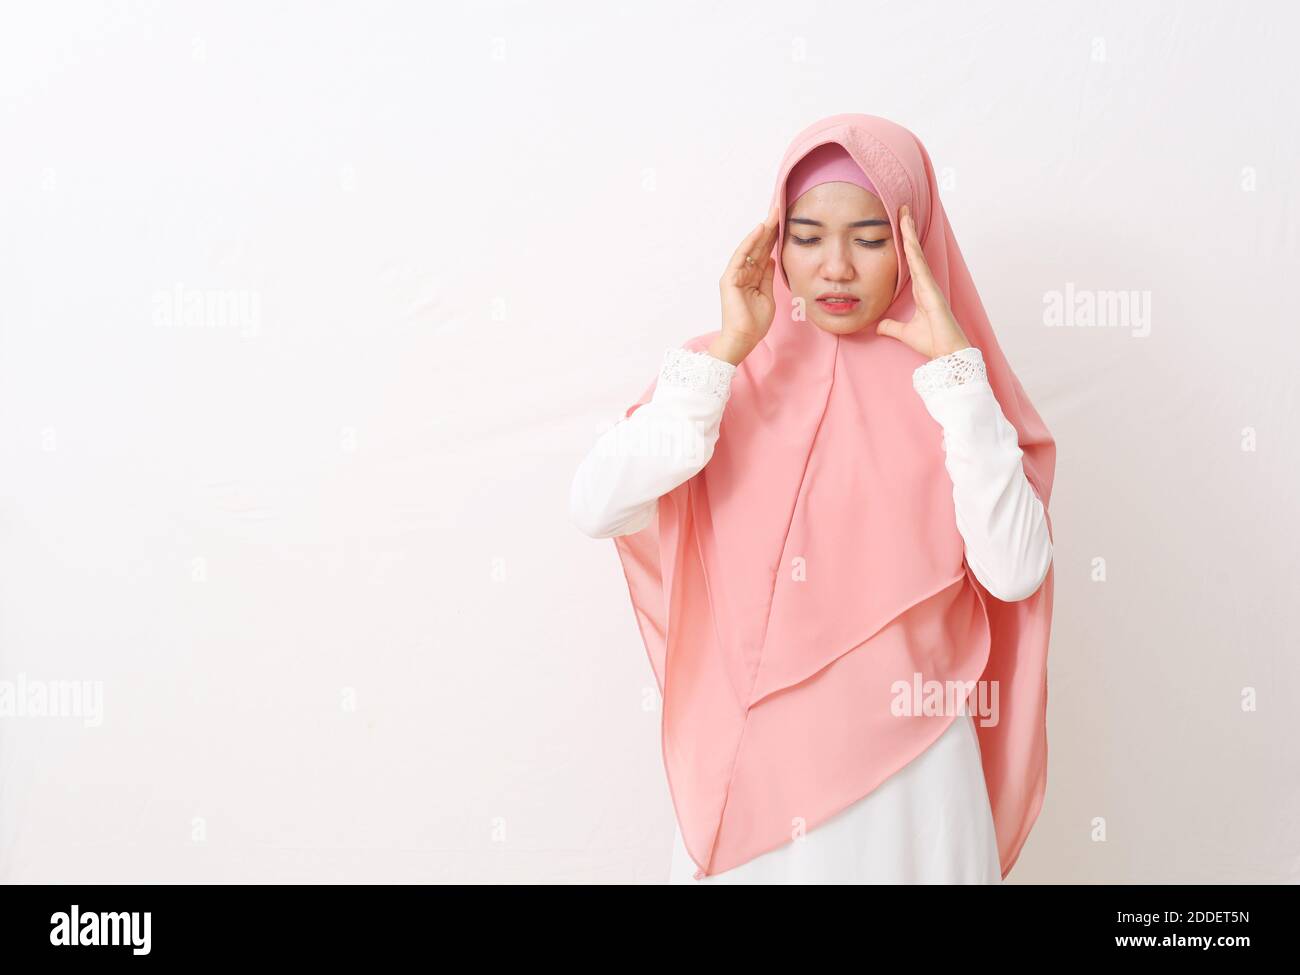 Un ritratto di donna musulmana asiatica che indossa un velo rosa o hijab e vestito bianco ha avuto un mal di testa. Toccare i templi della testa con entrambe le mani e la sofferenza Foto Stock